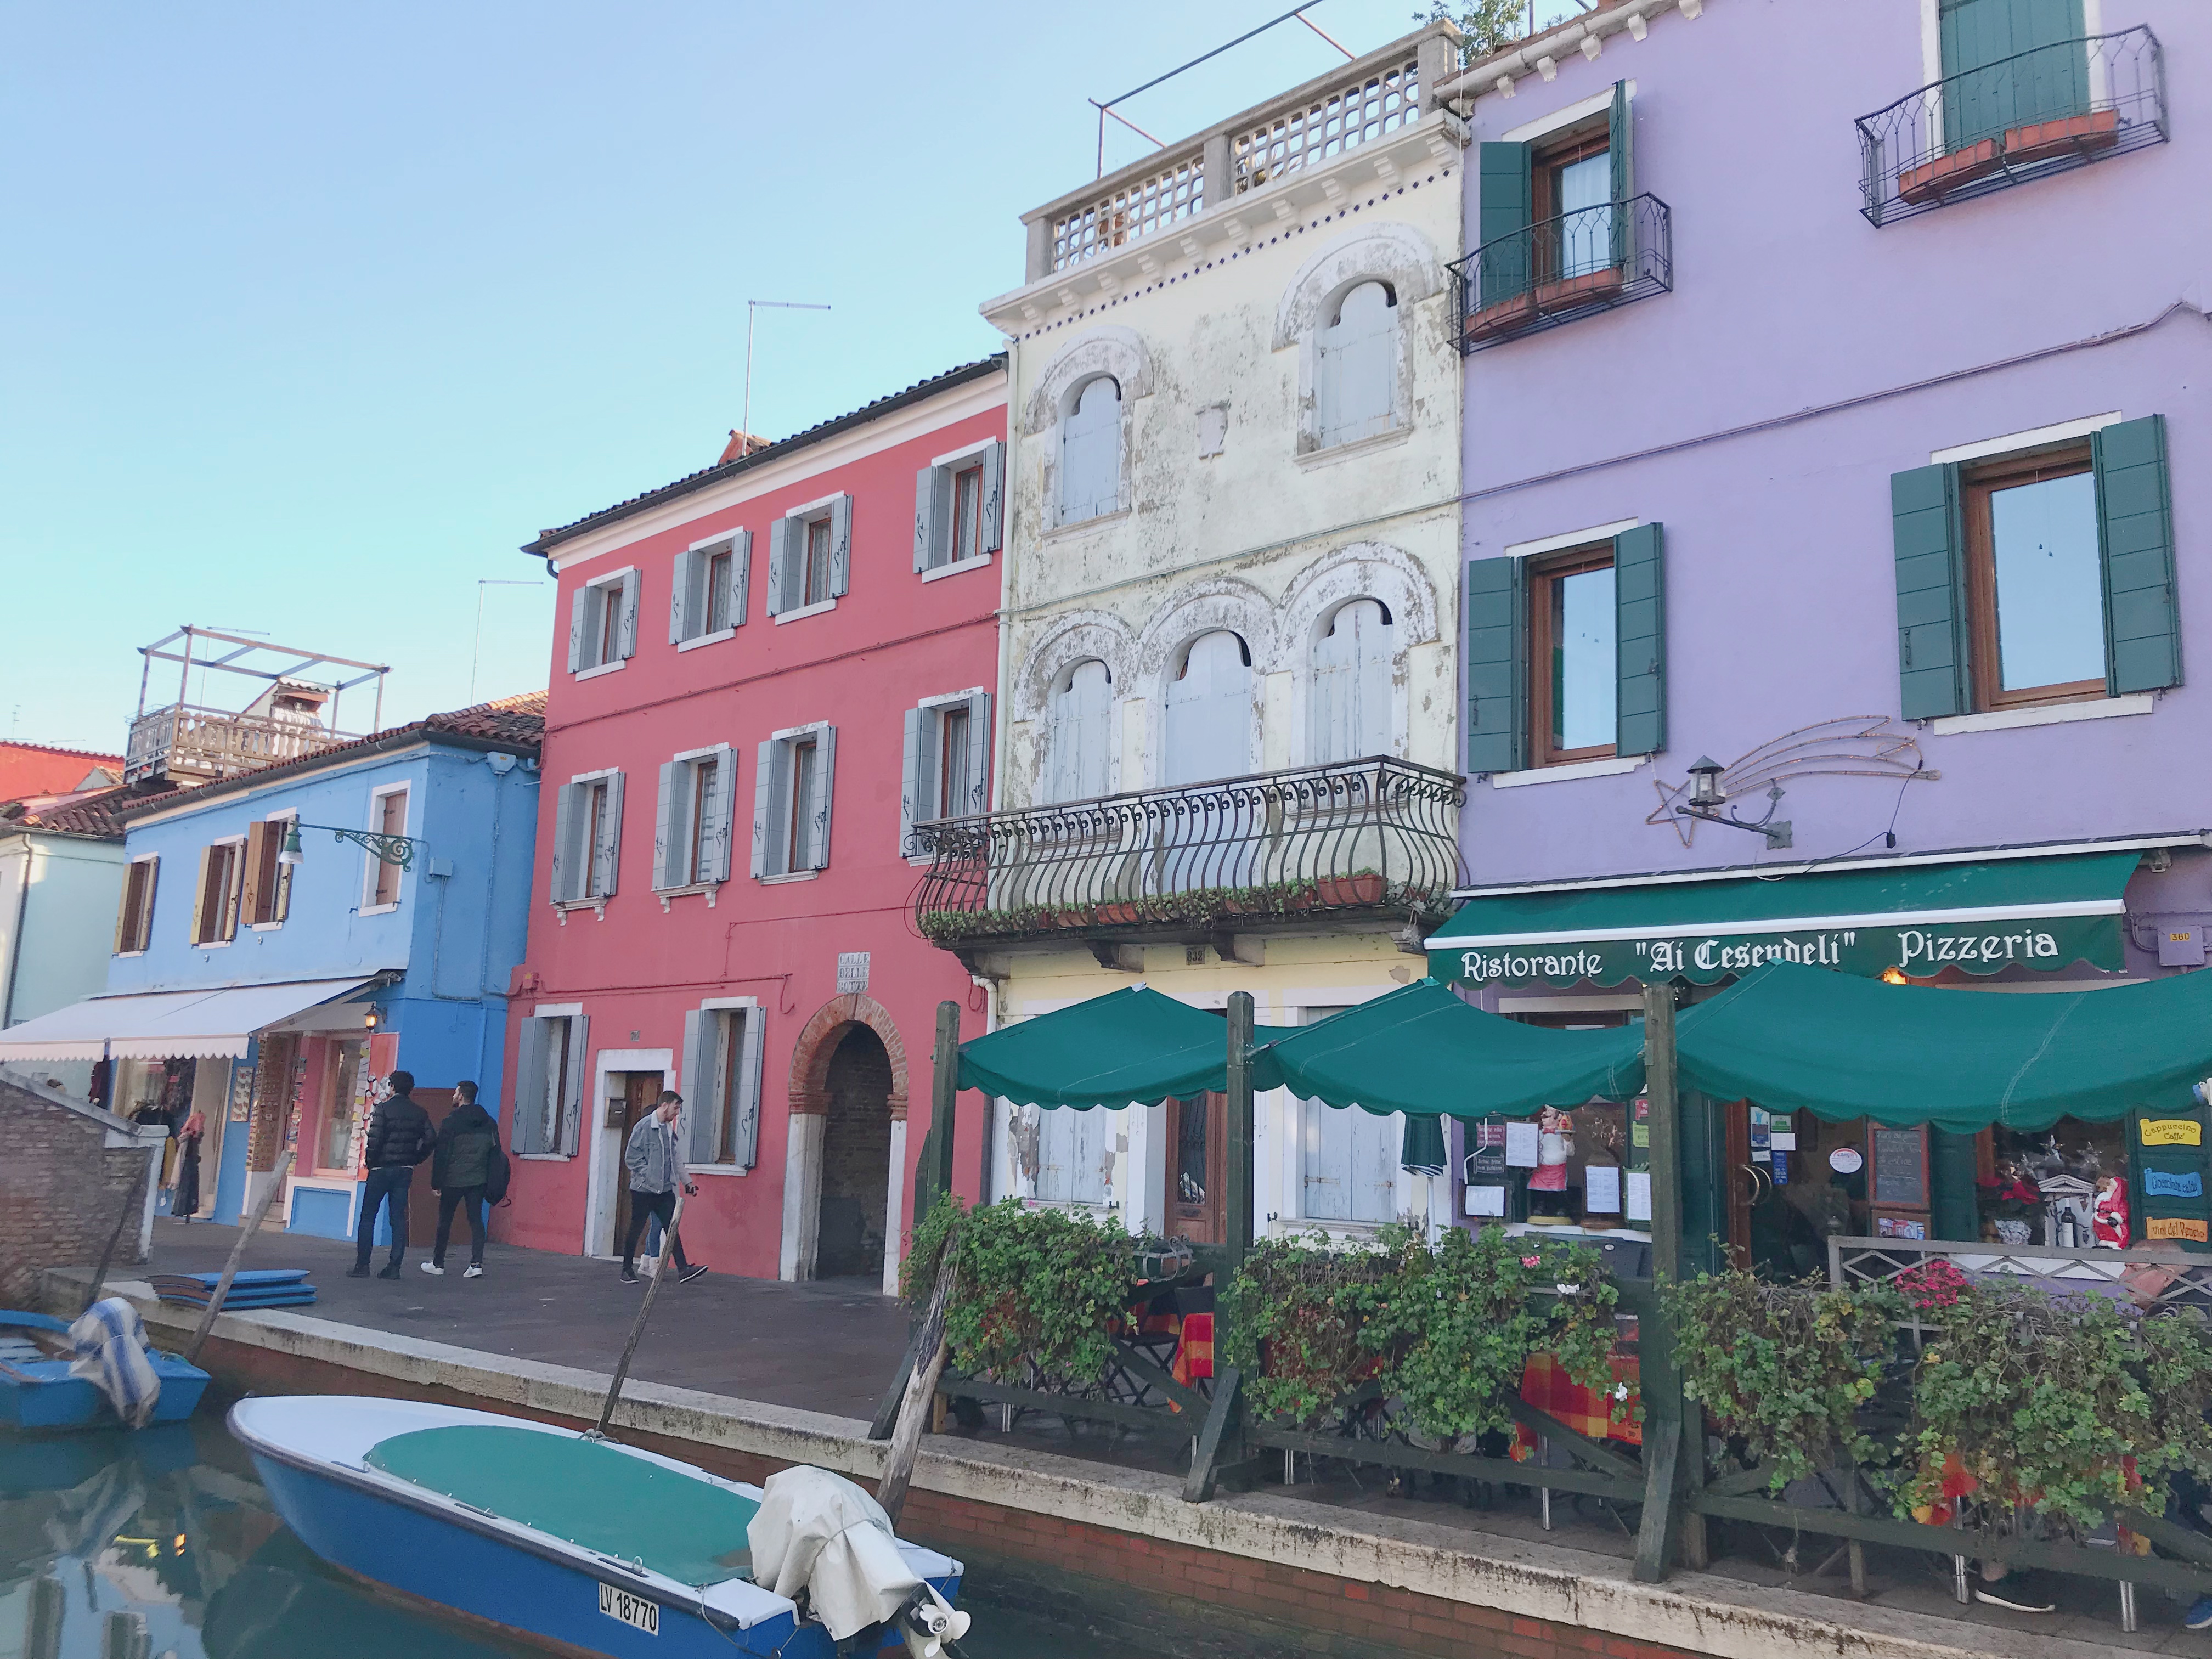 ヴェネチアブラーノ島のカラフルな家の街並みの画像